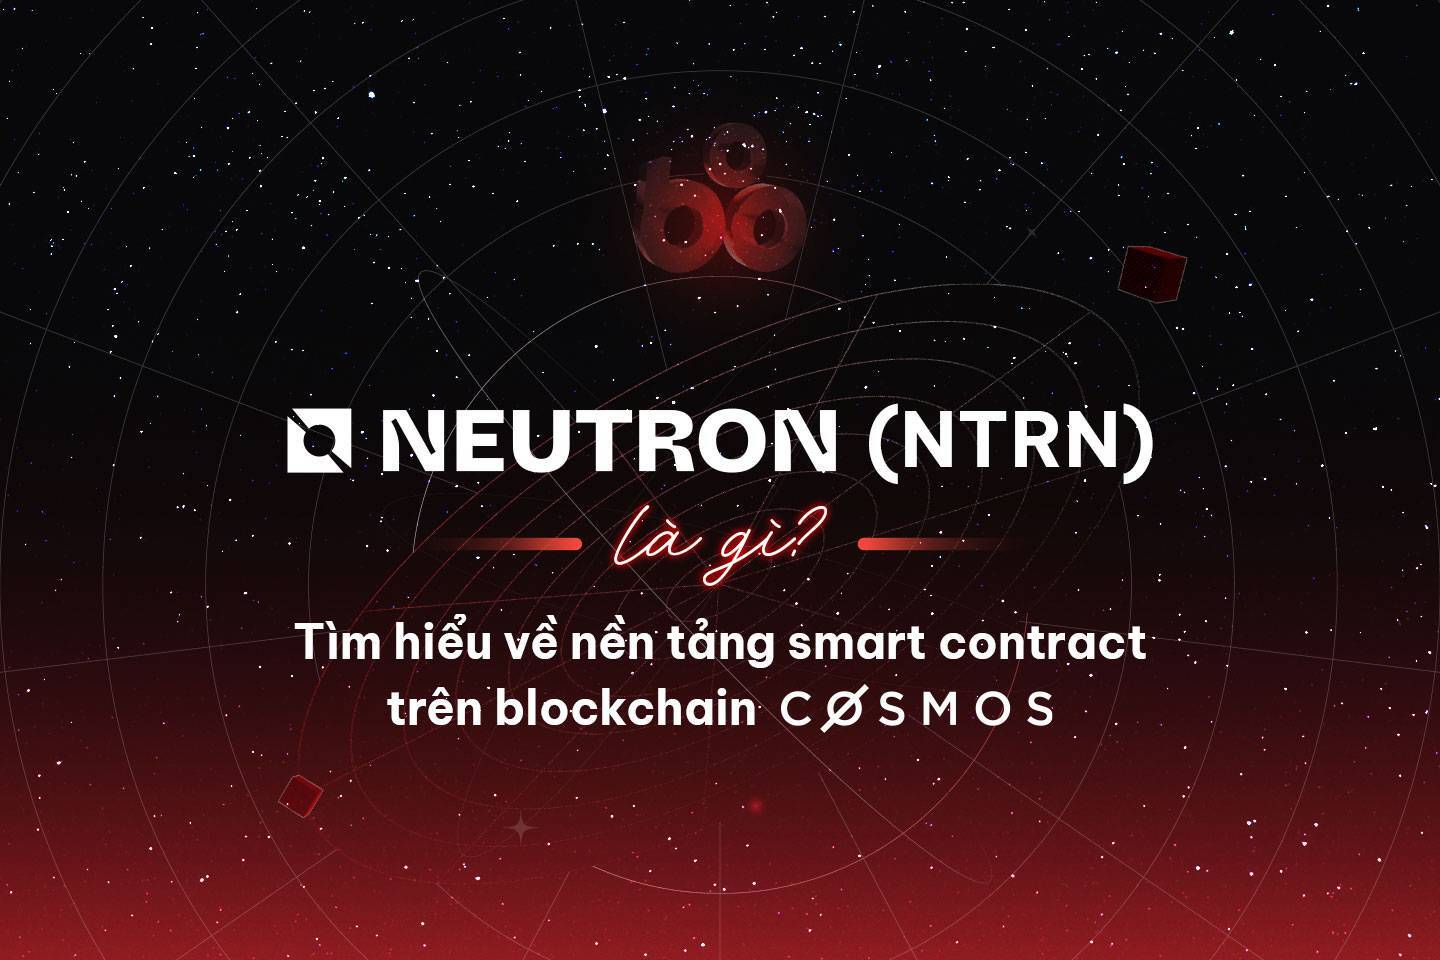 Neutron ntrn Là Gì Tìm Hiểu Về Nền Tảng Smart Contract Trên Blockchain Cosmos